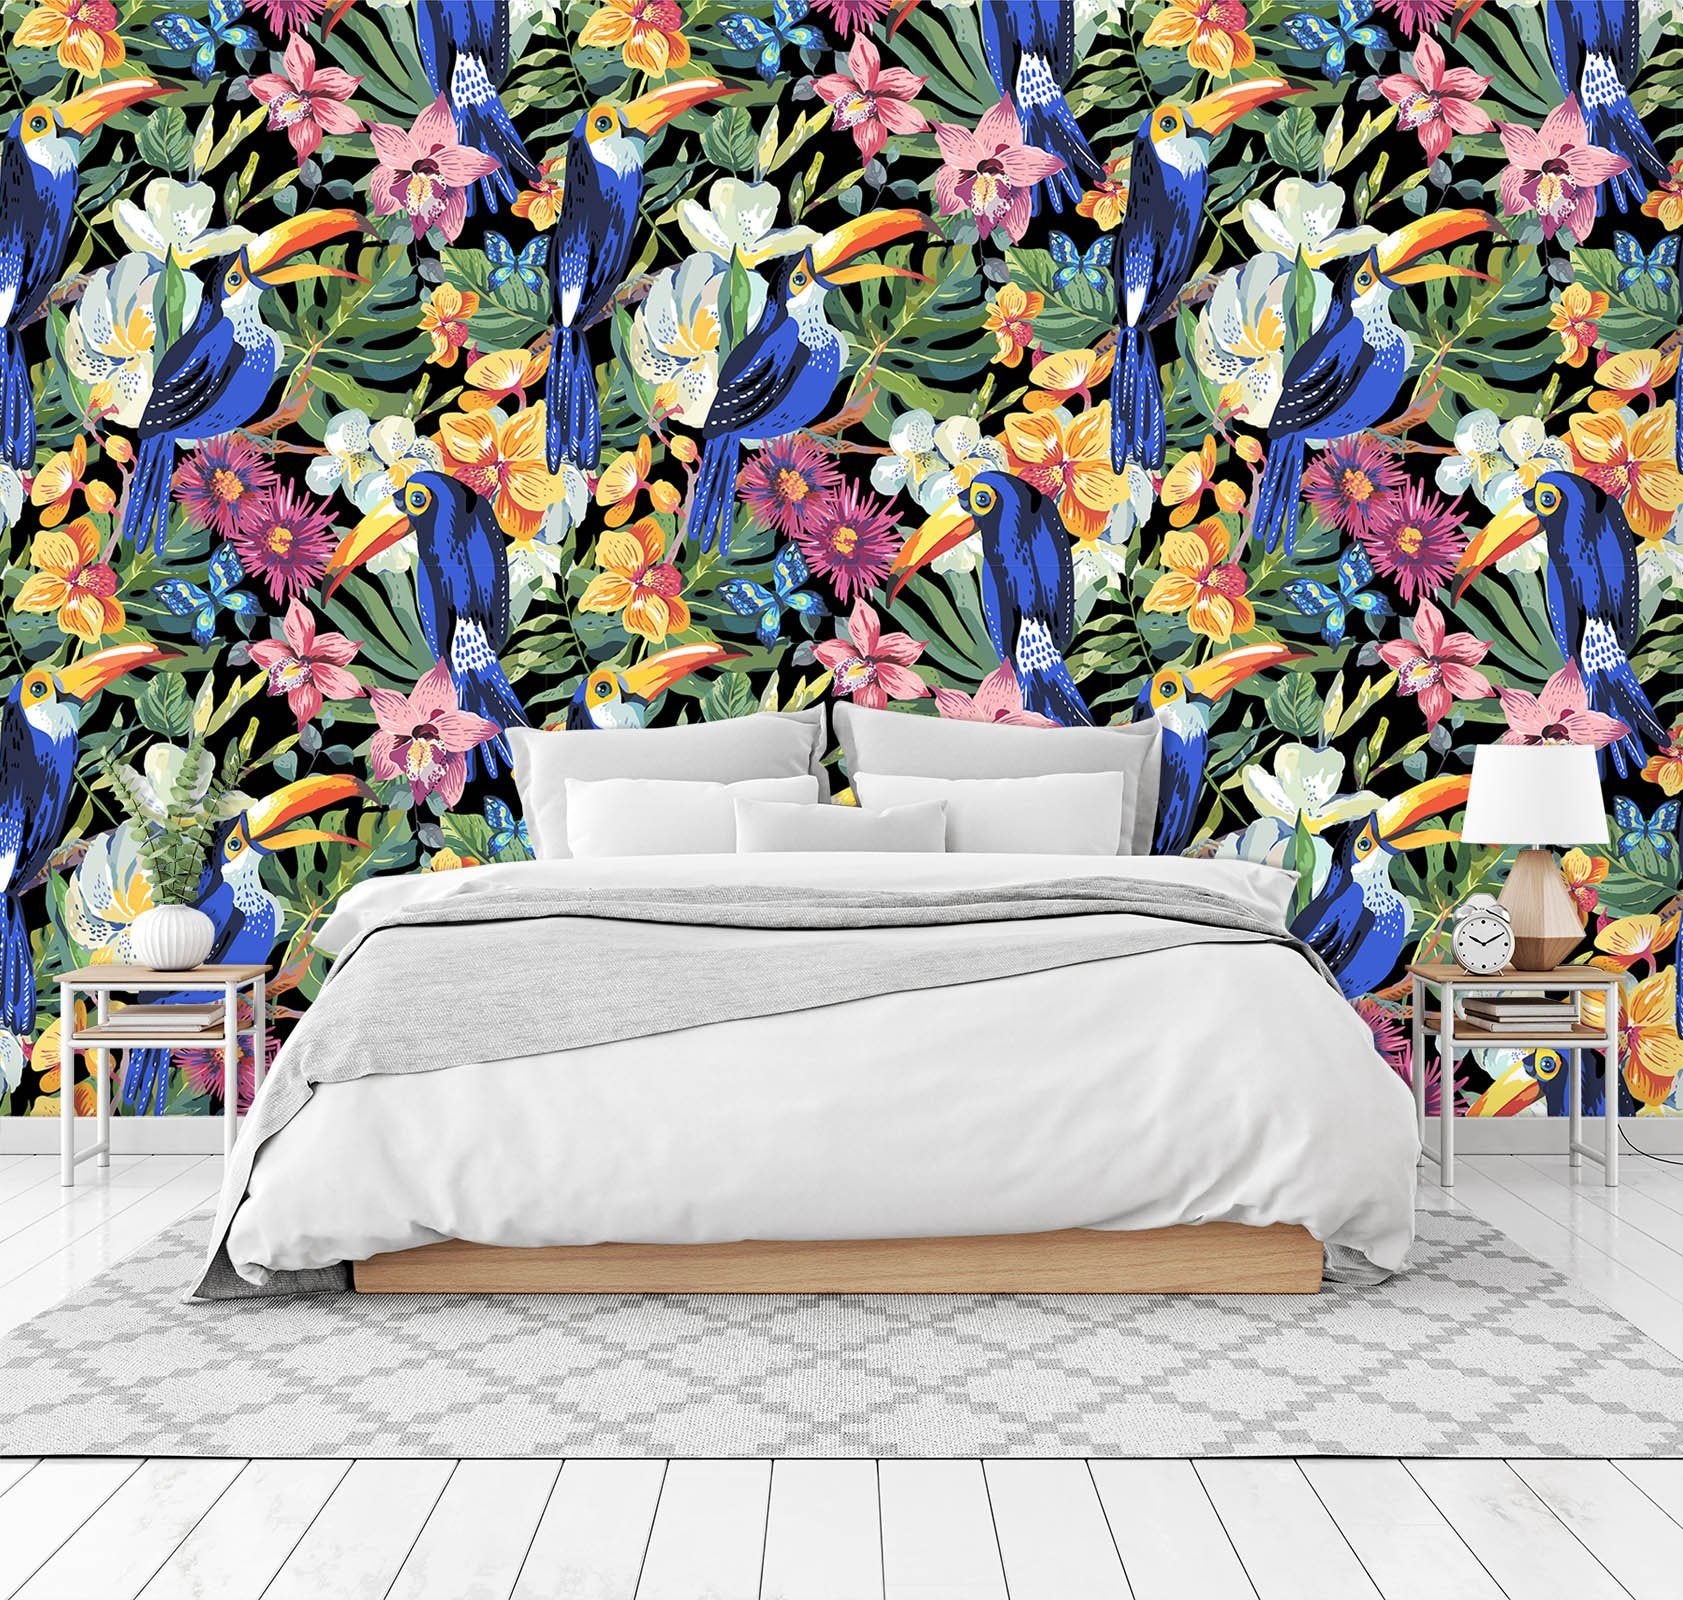 3D Blue Parrot Flower 50 Wall Murals Wallpaper AJ Wallpaper 2 